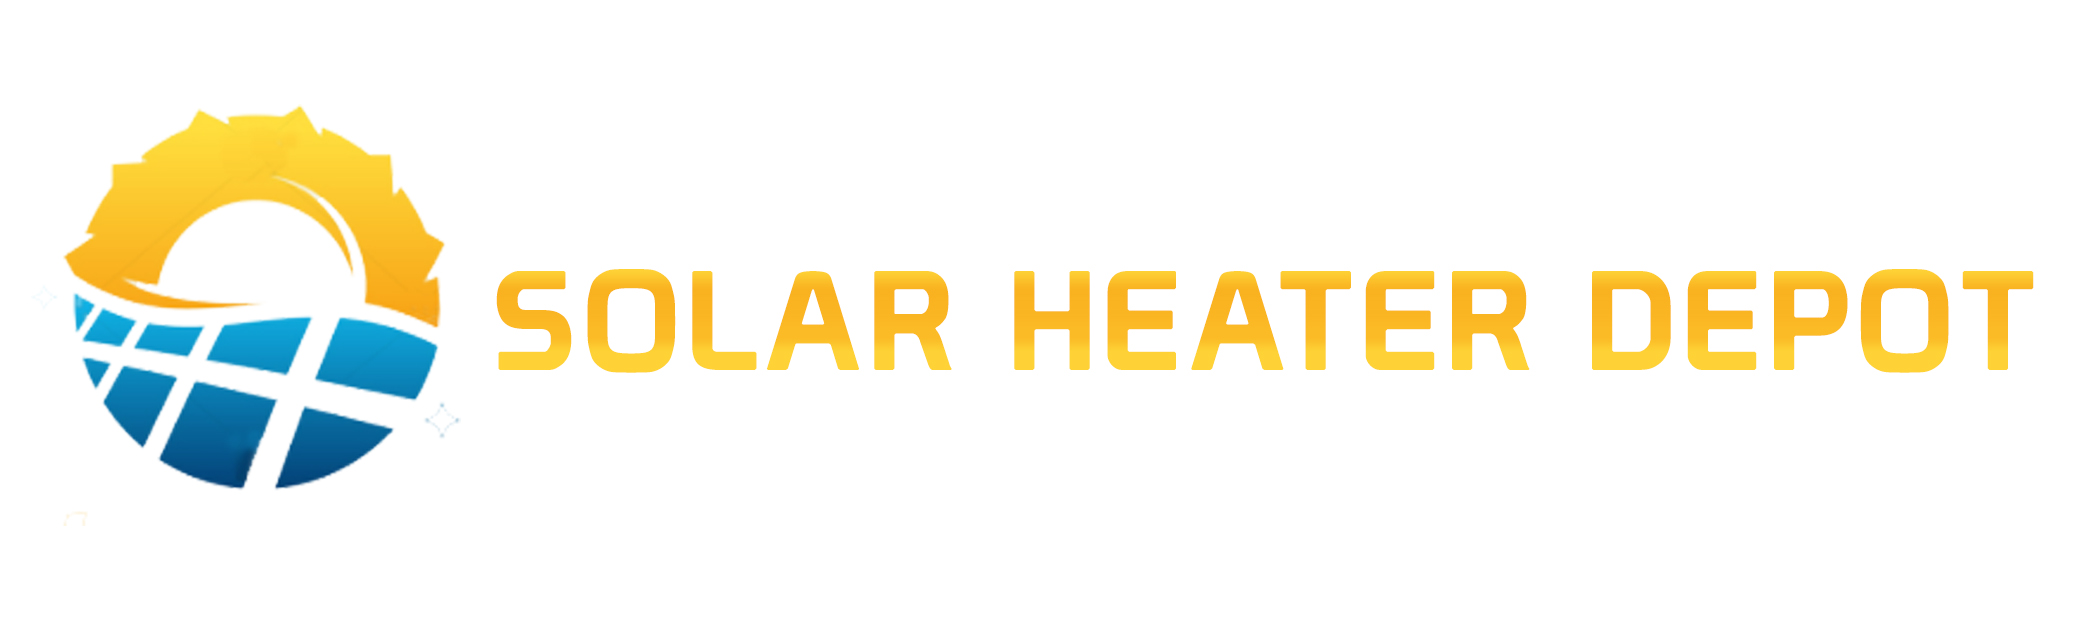 Solar Heater Depot